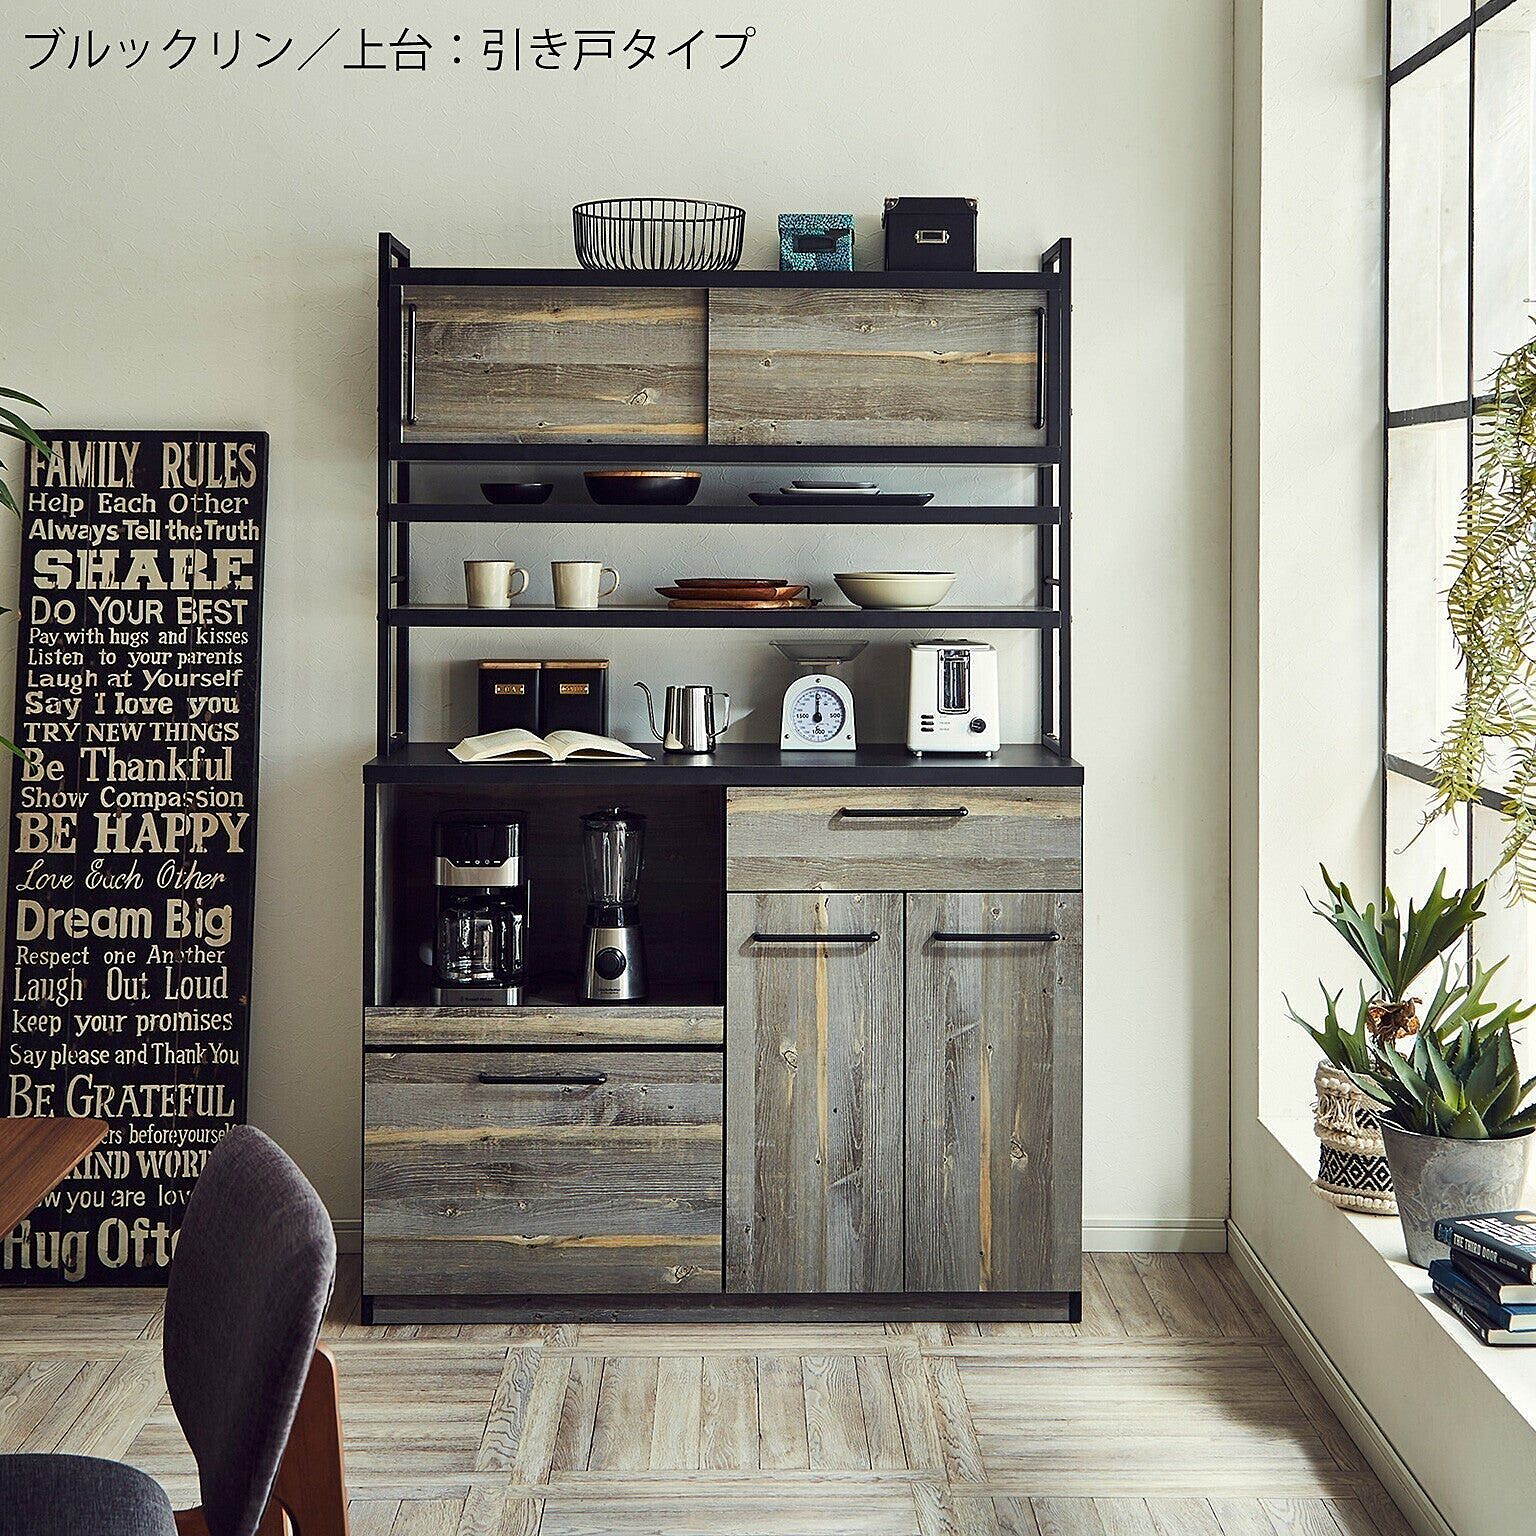 食器棚 キッチン収納 幅75cm ホワイト 木目調 板扉 上置き付き 上台扉耐震ラッチ付き 日本製 ダイニングボード 完成品 